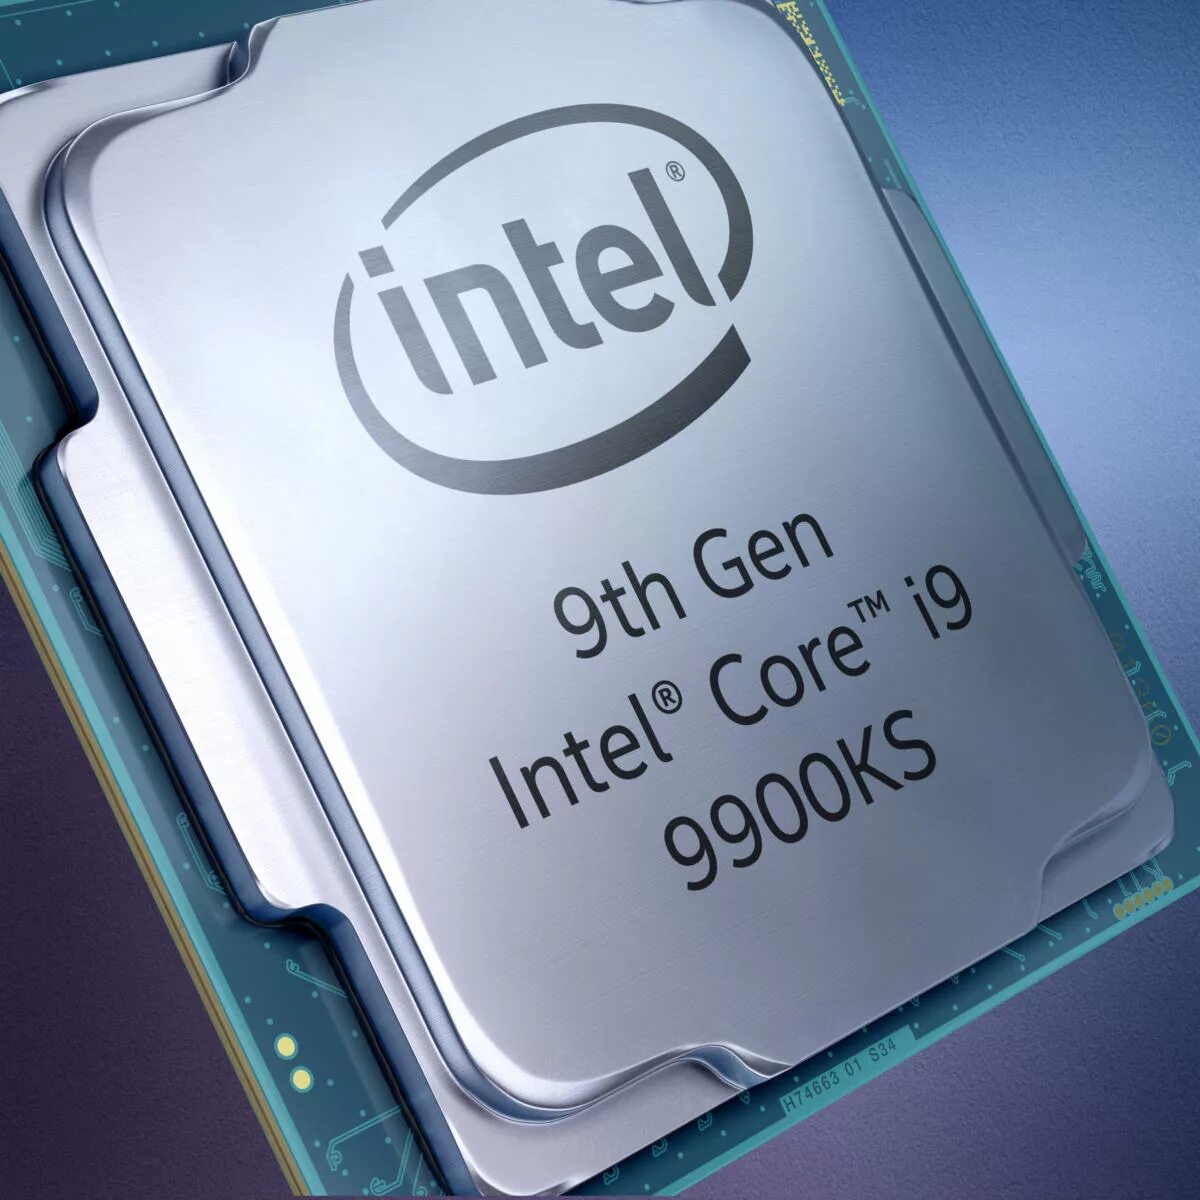 Процессор Intel Core i9. Процессор Intel Core i9-9900ks. I9 9900ks. Intel Core i9-9900ks specs.